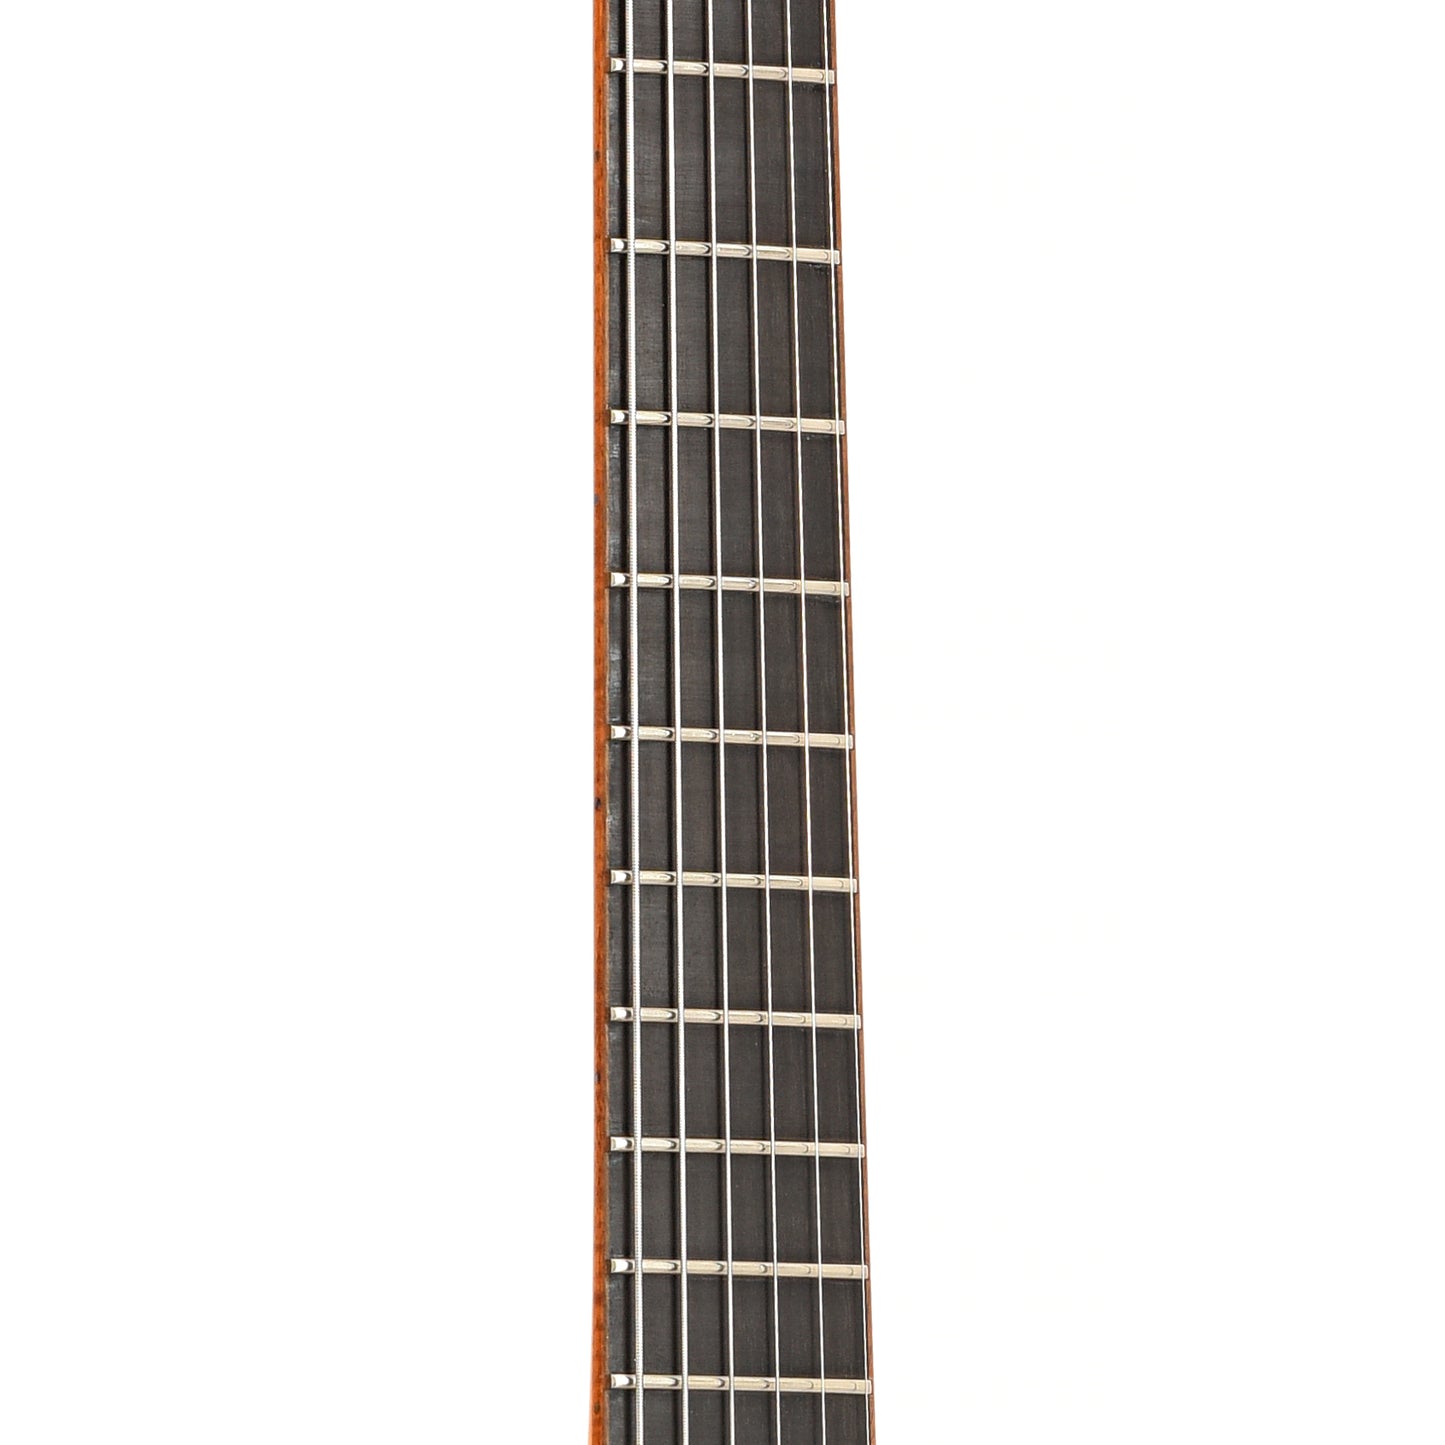 Fretboard of Megas Apollo Archtop Guitar